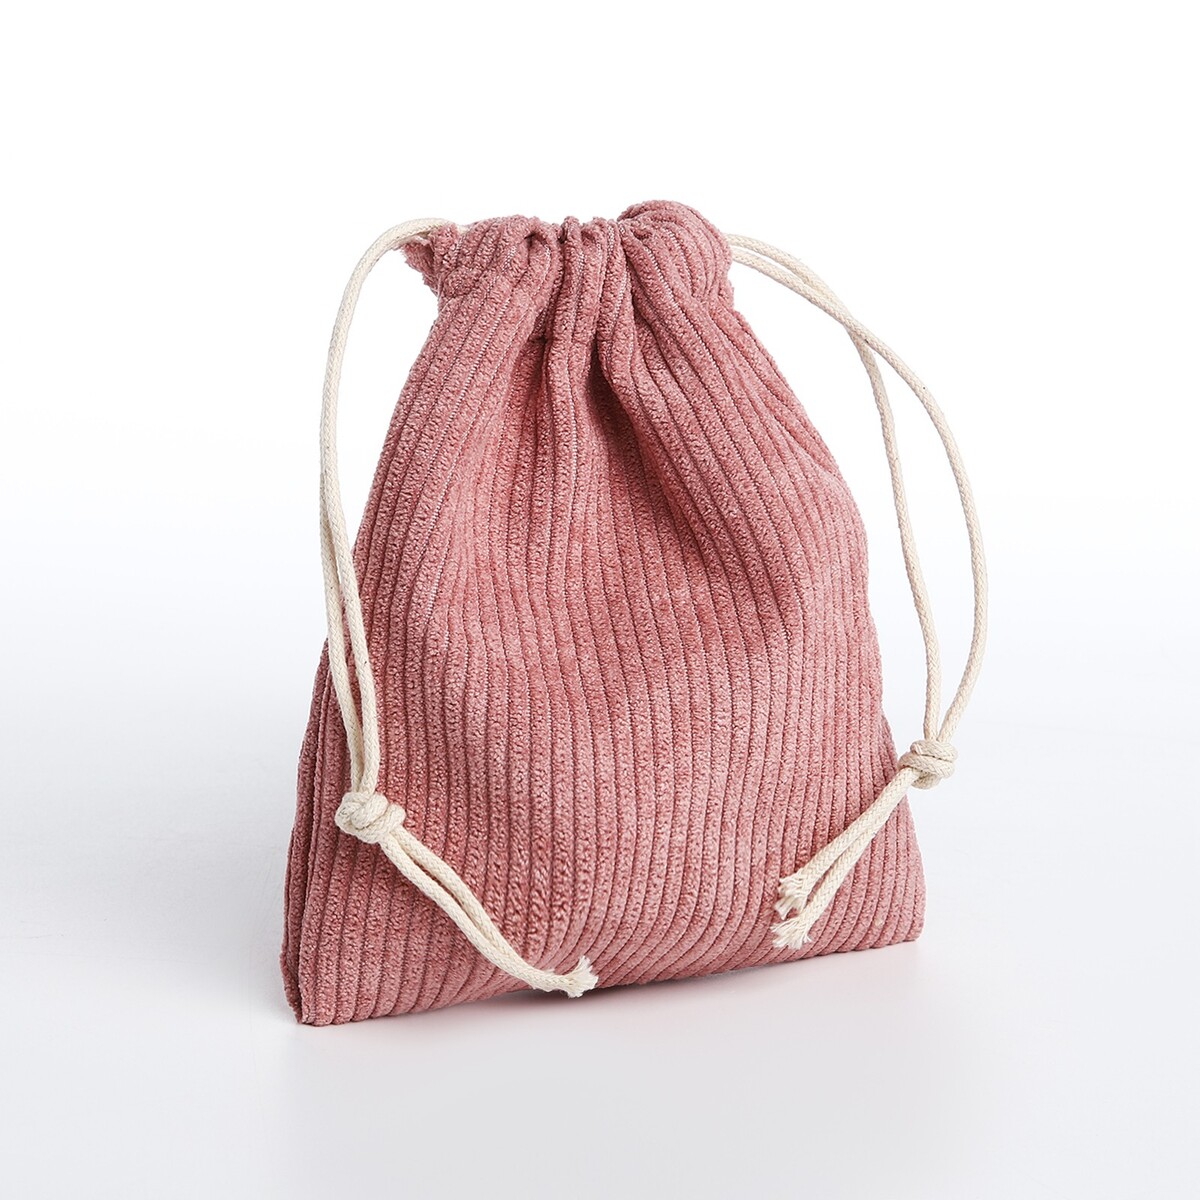 Косметичка - мешок с завязками, цвет розовый косметичка мешок с завязками розовый